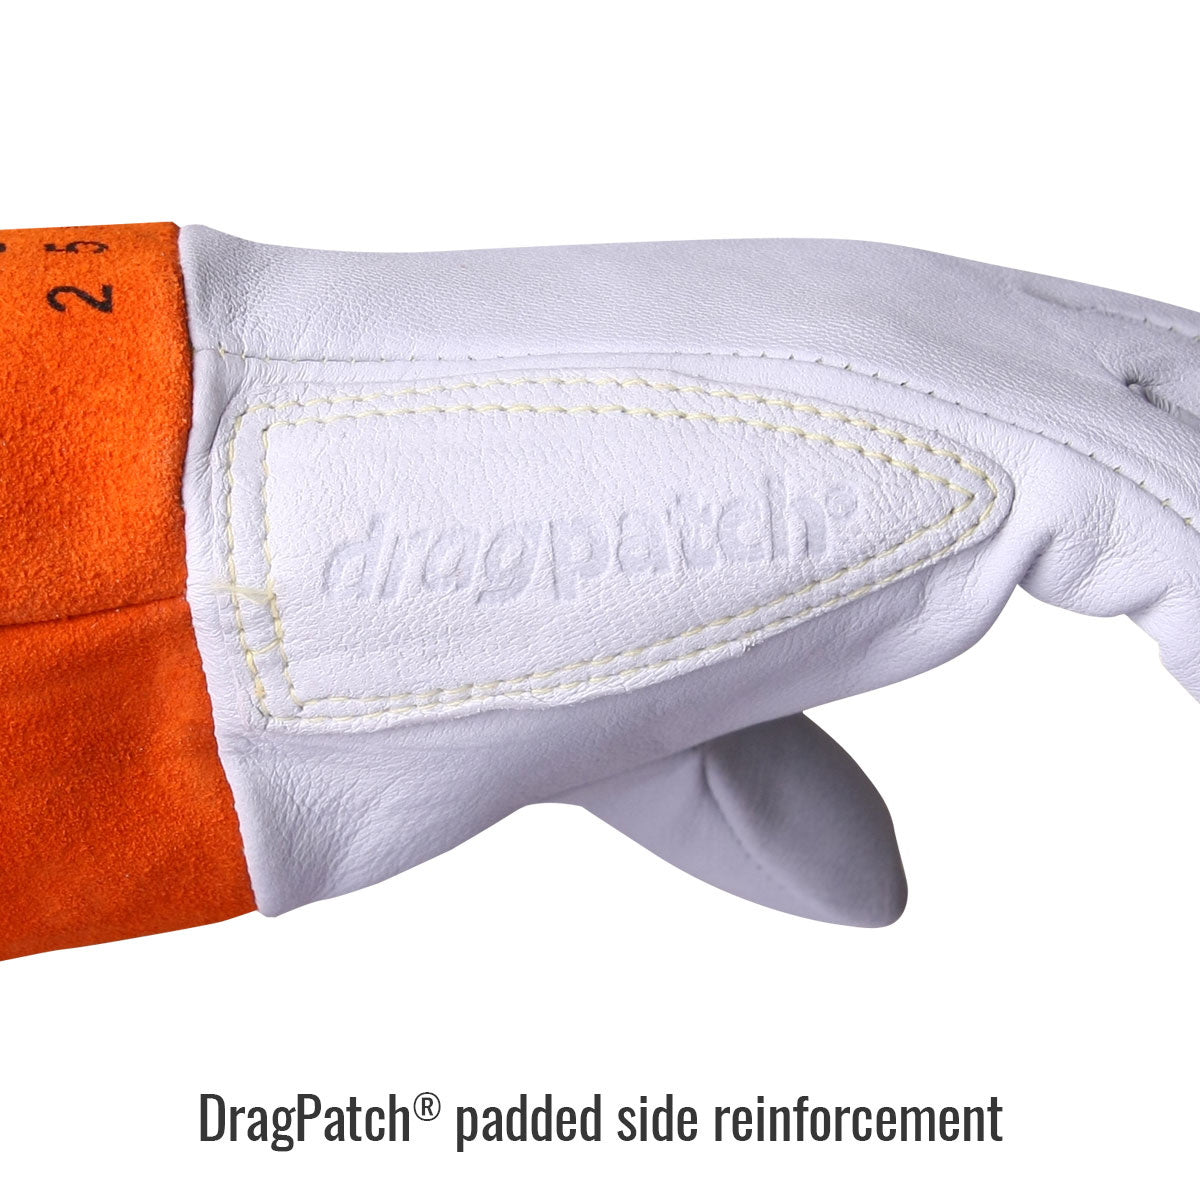 Revco Black Stallion Premium Kidskin TIG Gloves with DragPatch (25K)